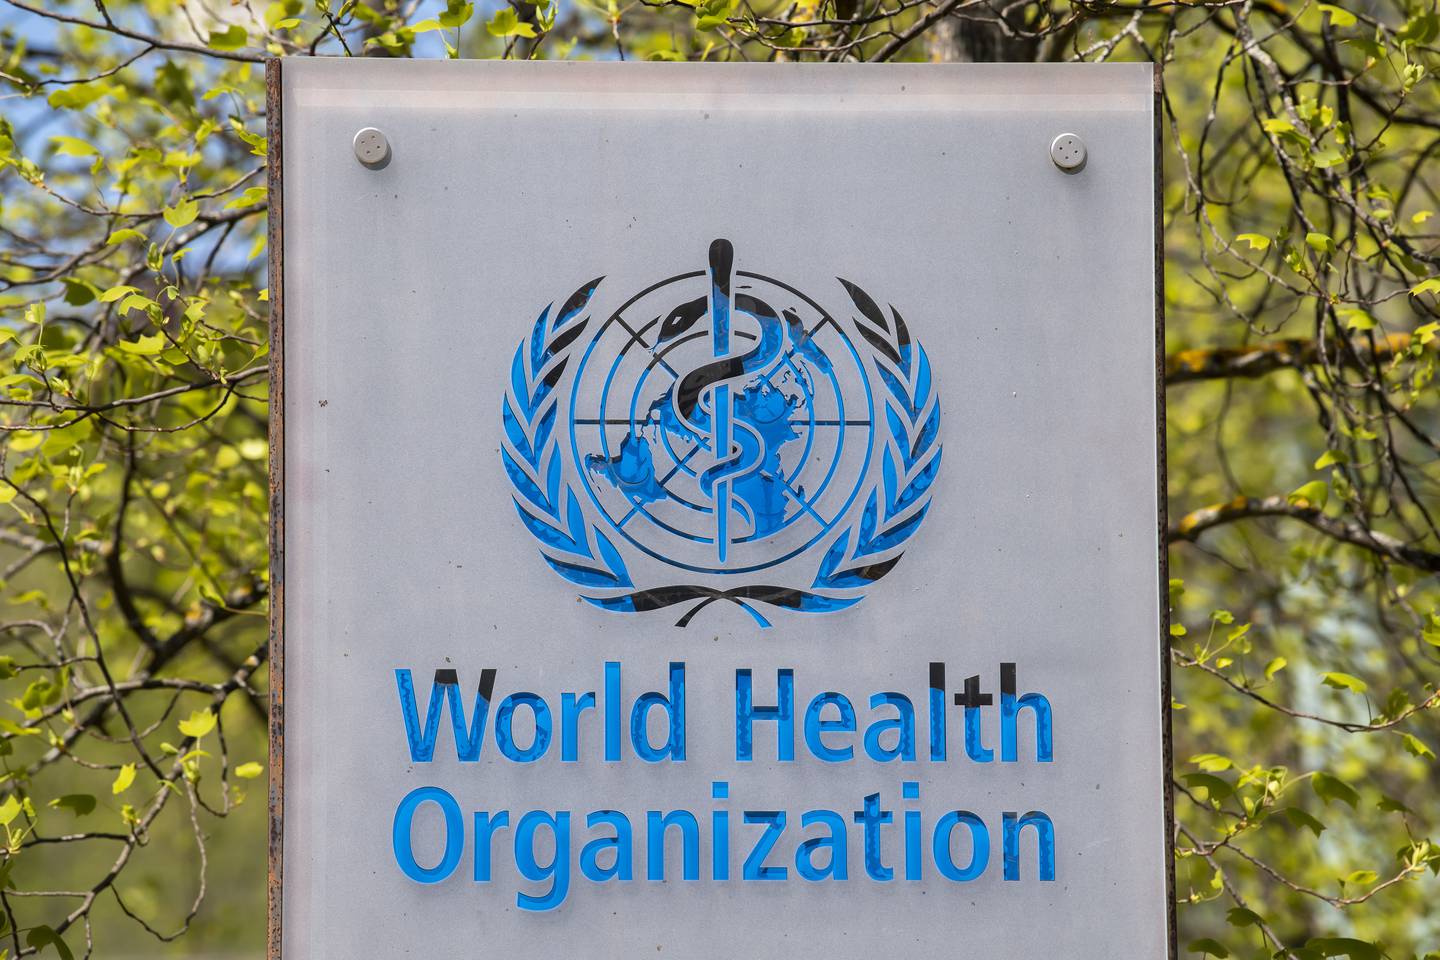 Mandag startet et ekstraordinært møte i Verdens helseorganisasjon for å diskutere internasjonal pandemihåndtering. Foto: Martial Trezzini / Keystone via AP / NTB